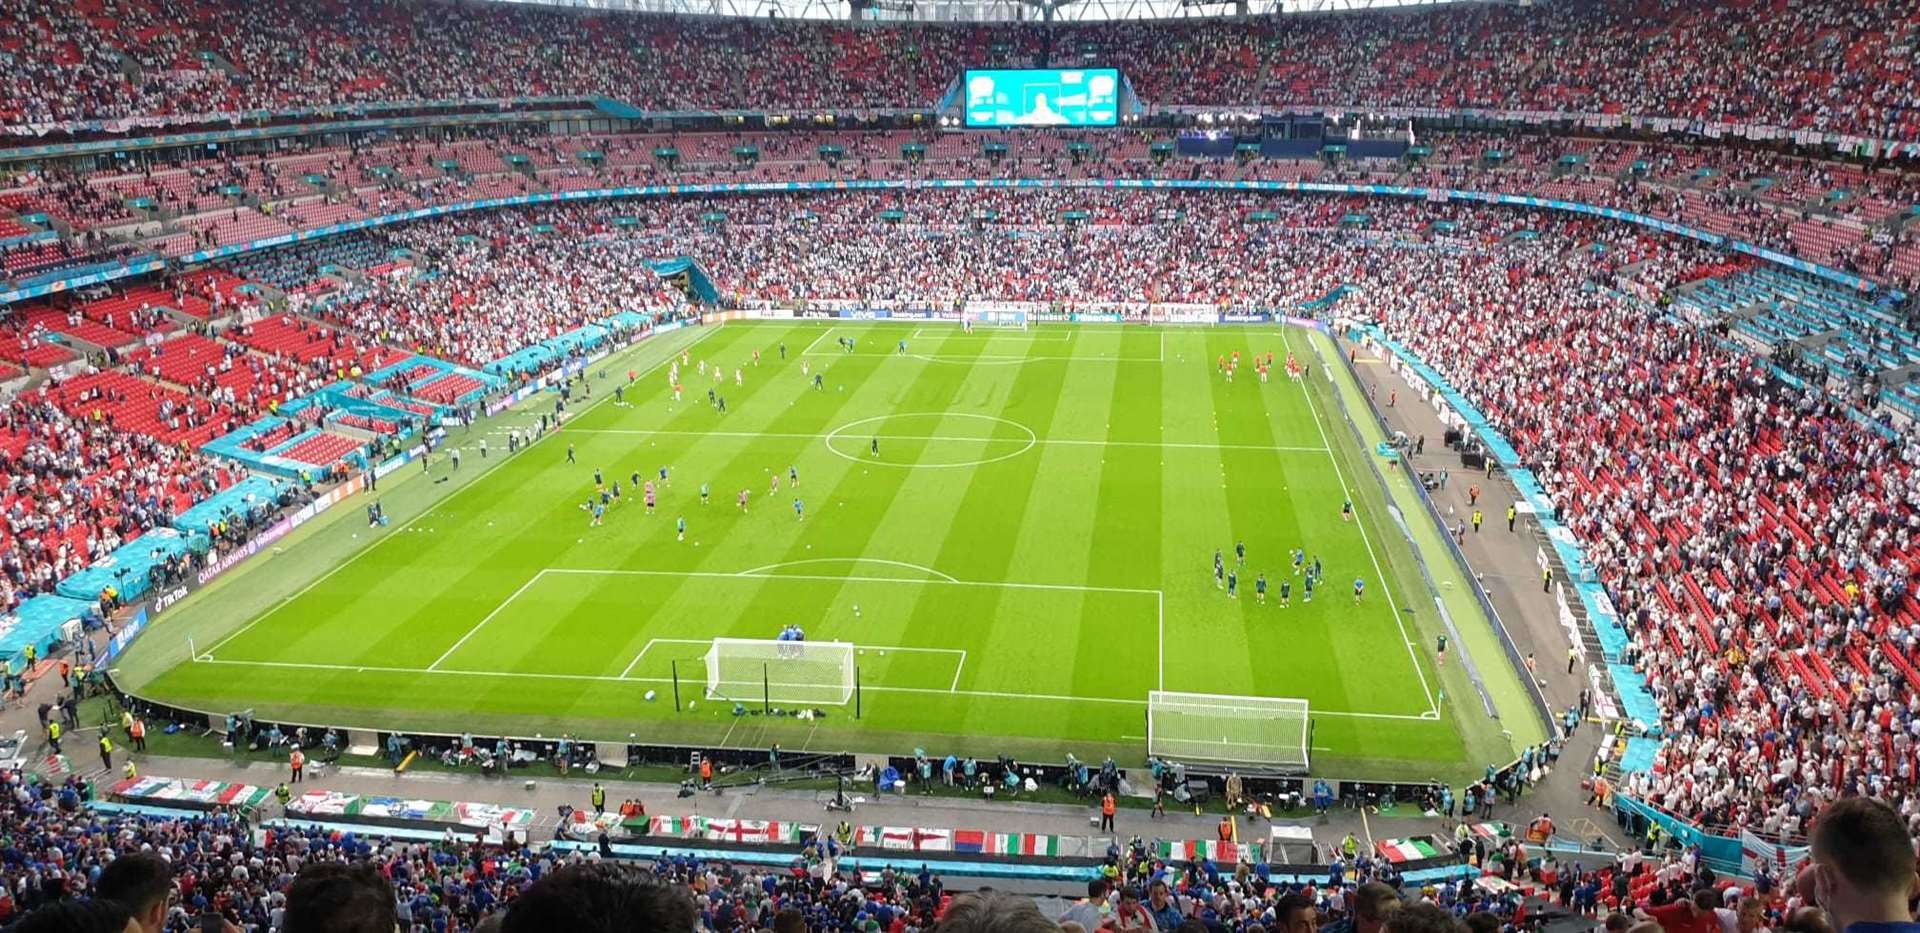 The scene in Wembley (49090190)